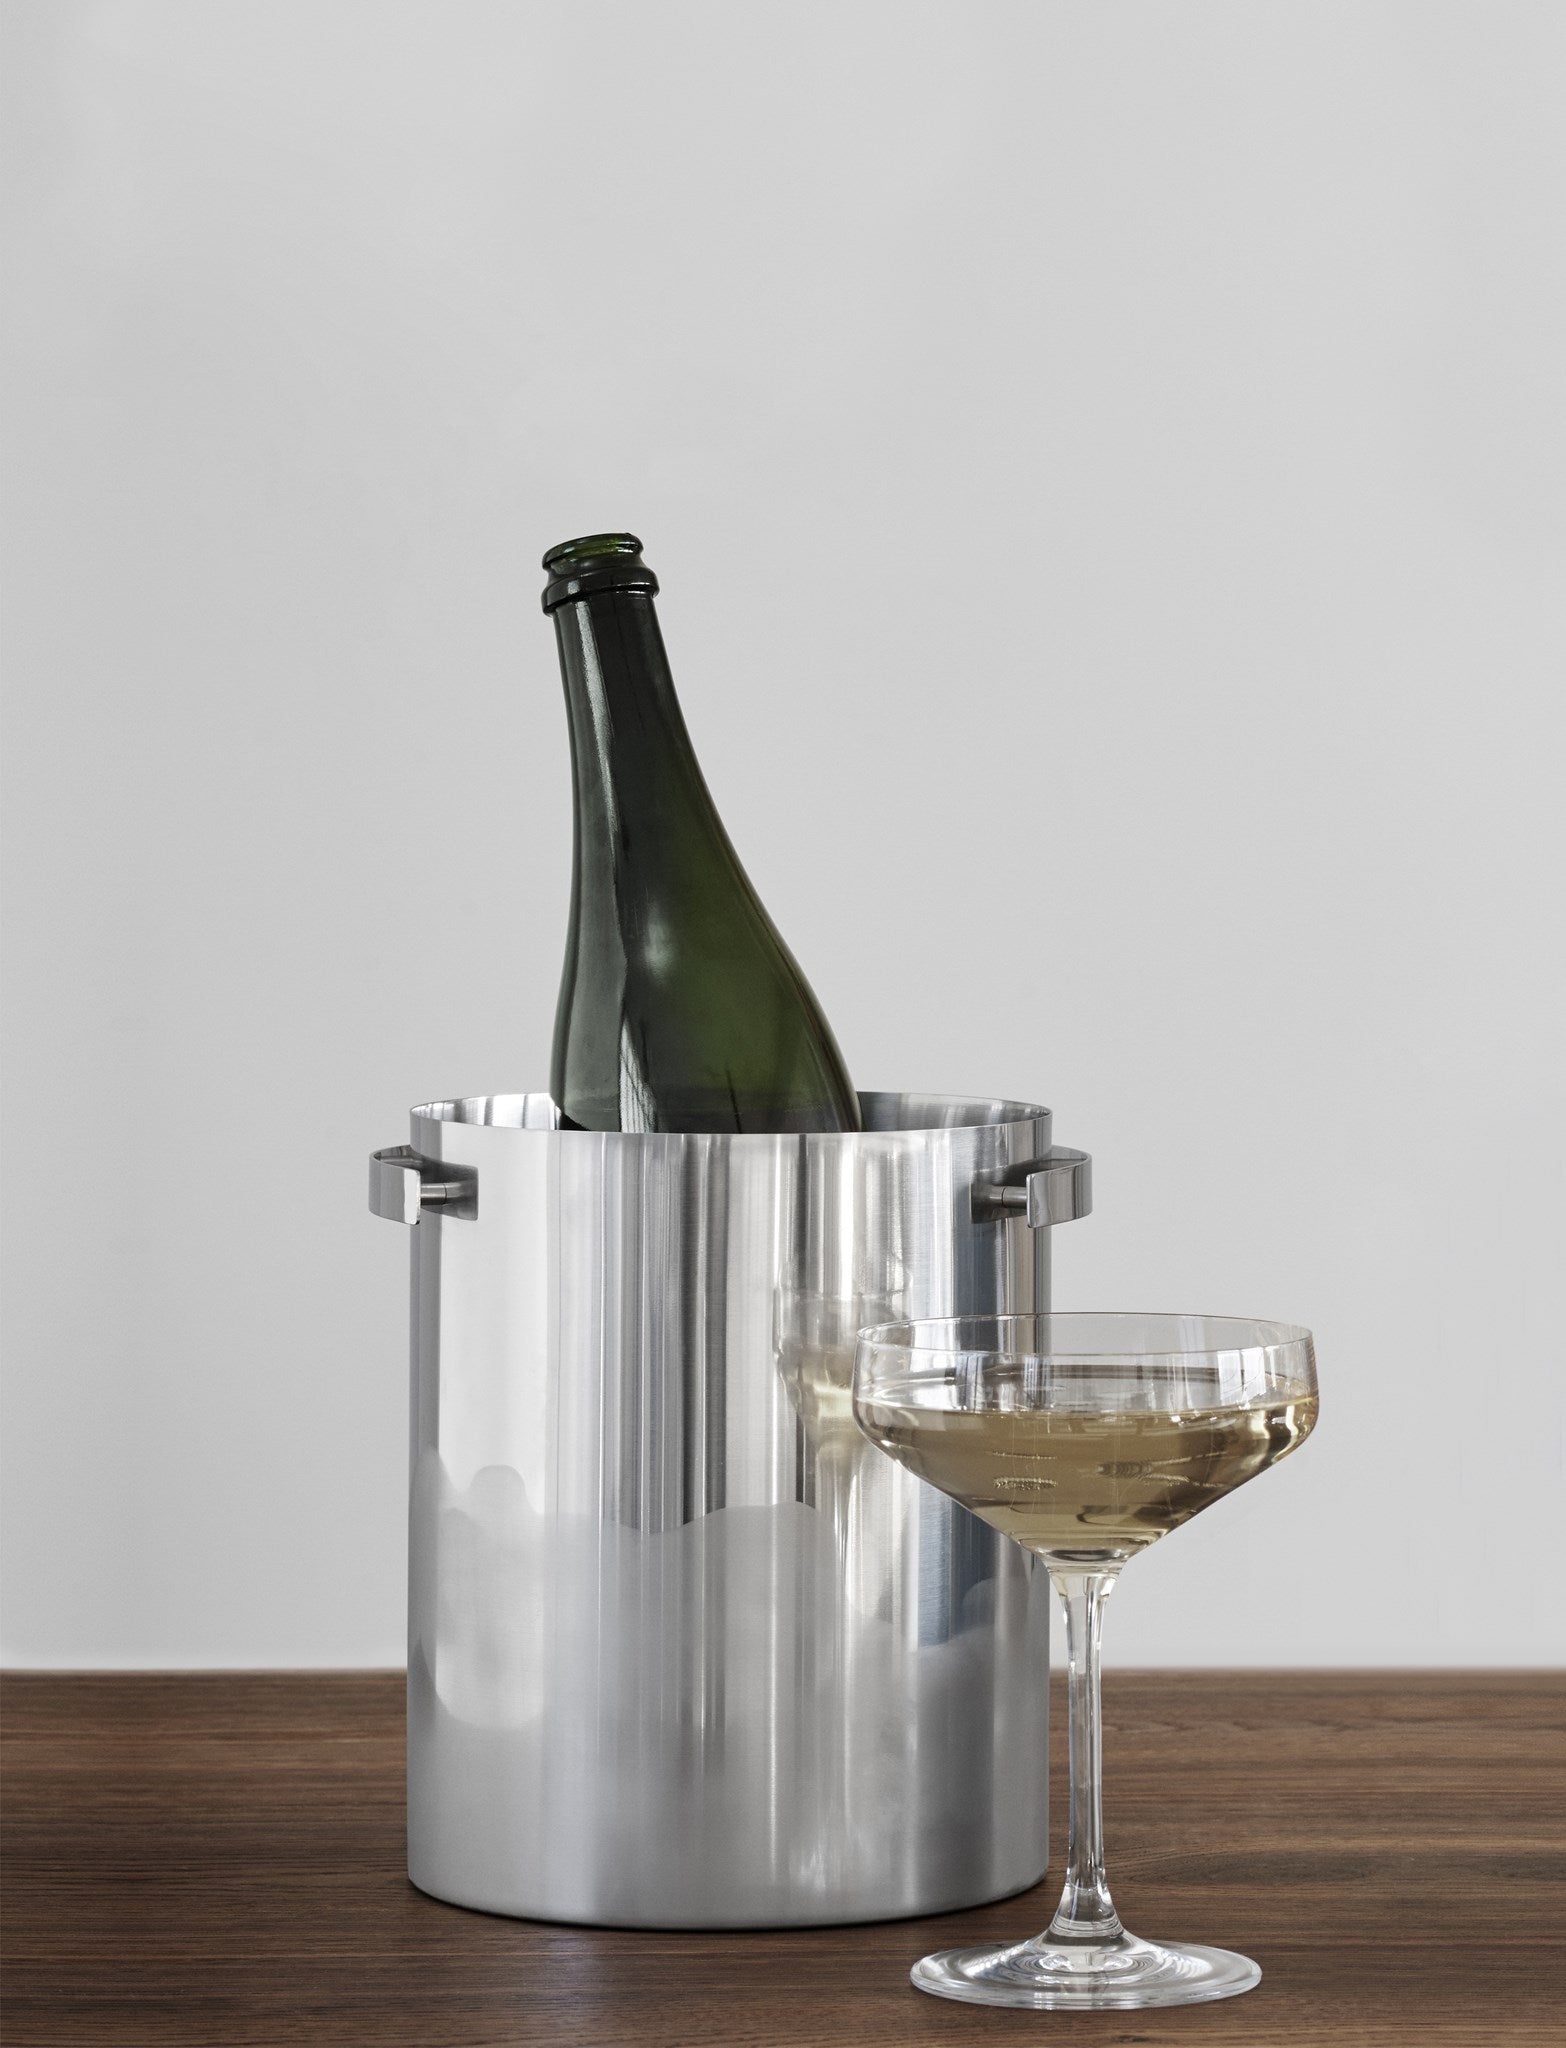 Stelton Arne Jacobsen Champagne Køler